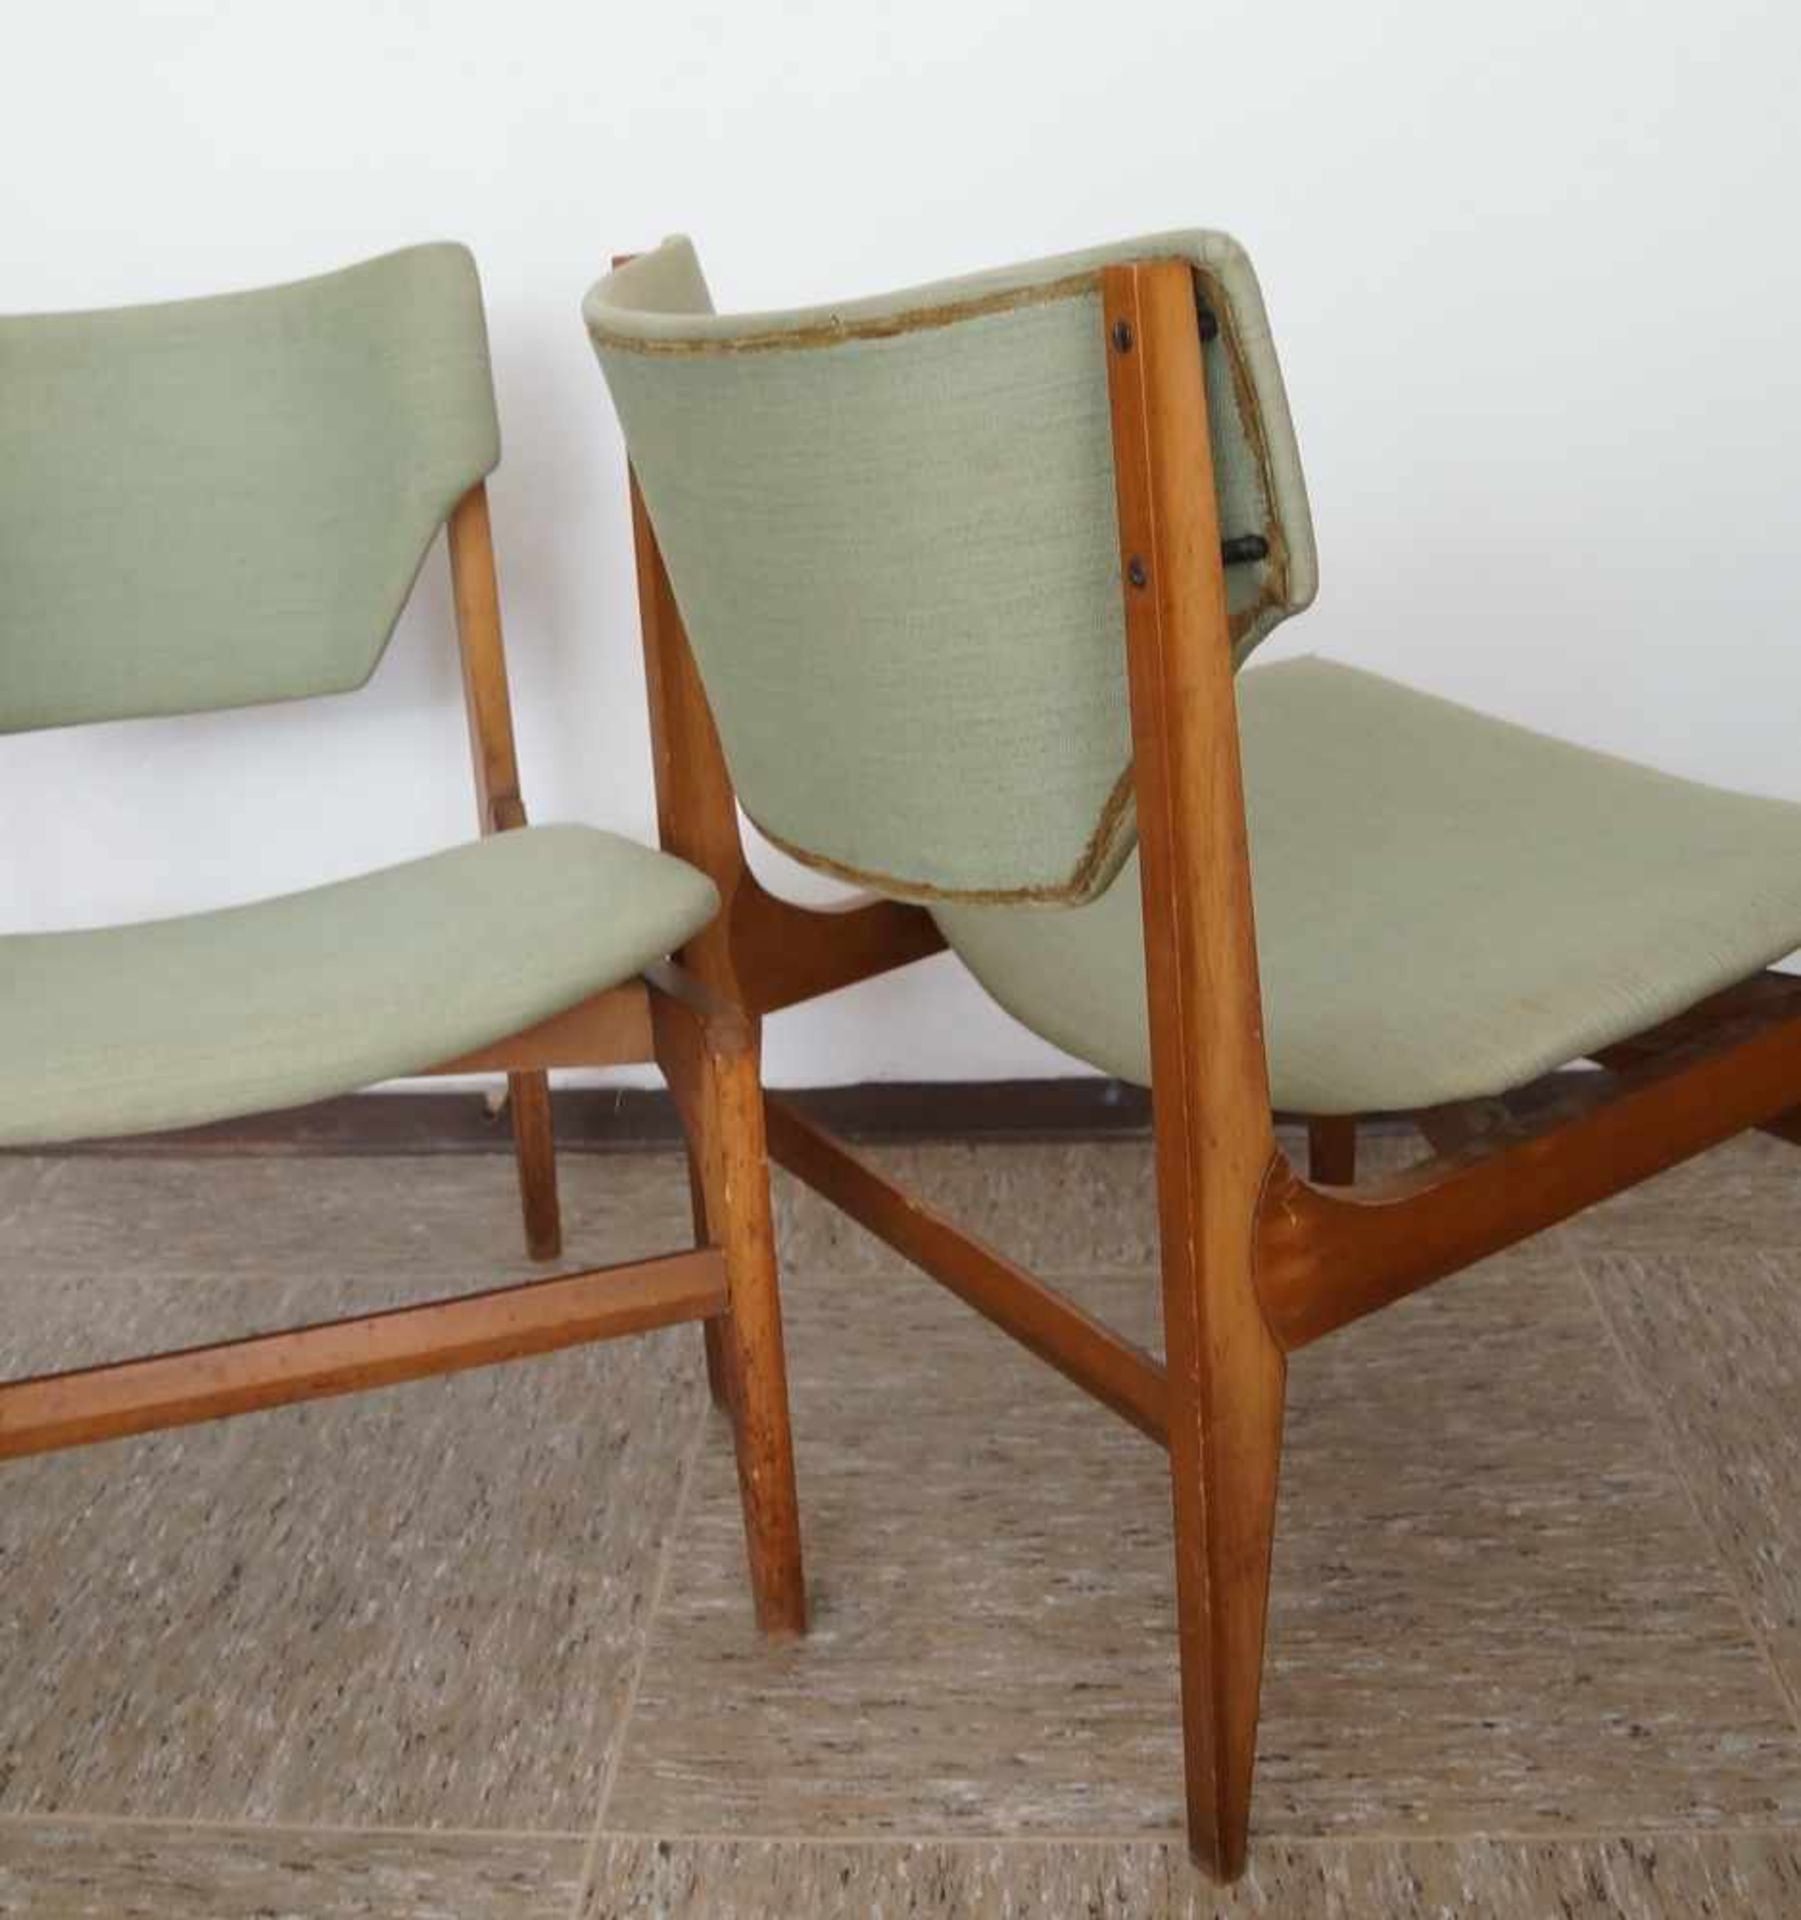 Zwei Stühle und ein Hocker, grüner Bezug, Gio Ponti zugesch. Italien, besch.,74x54x54xSH40 cm, - Bild 4 aus 6